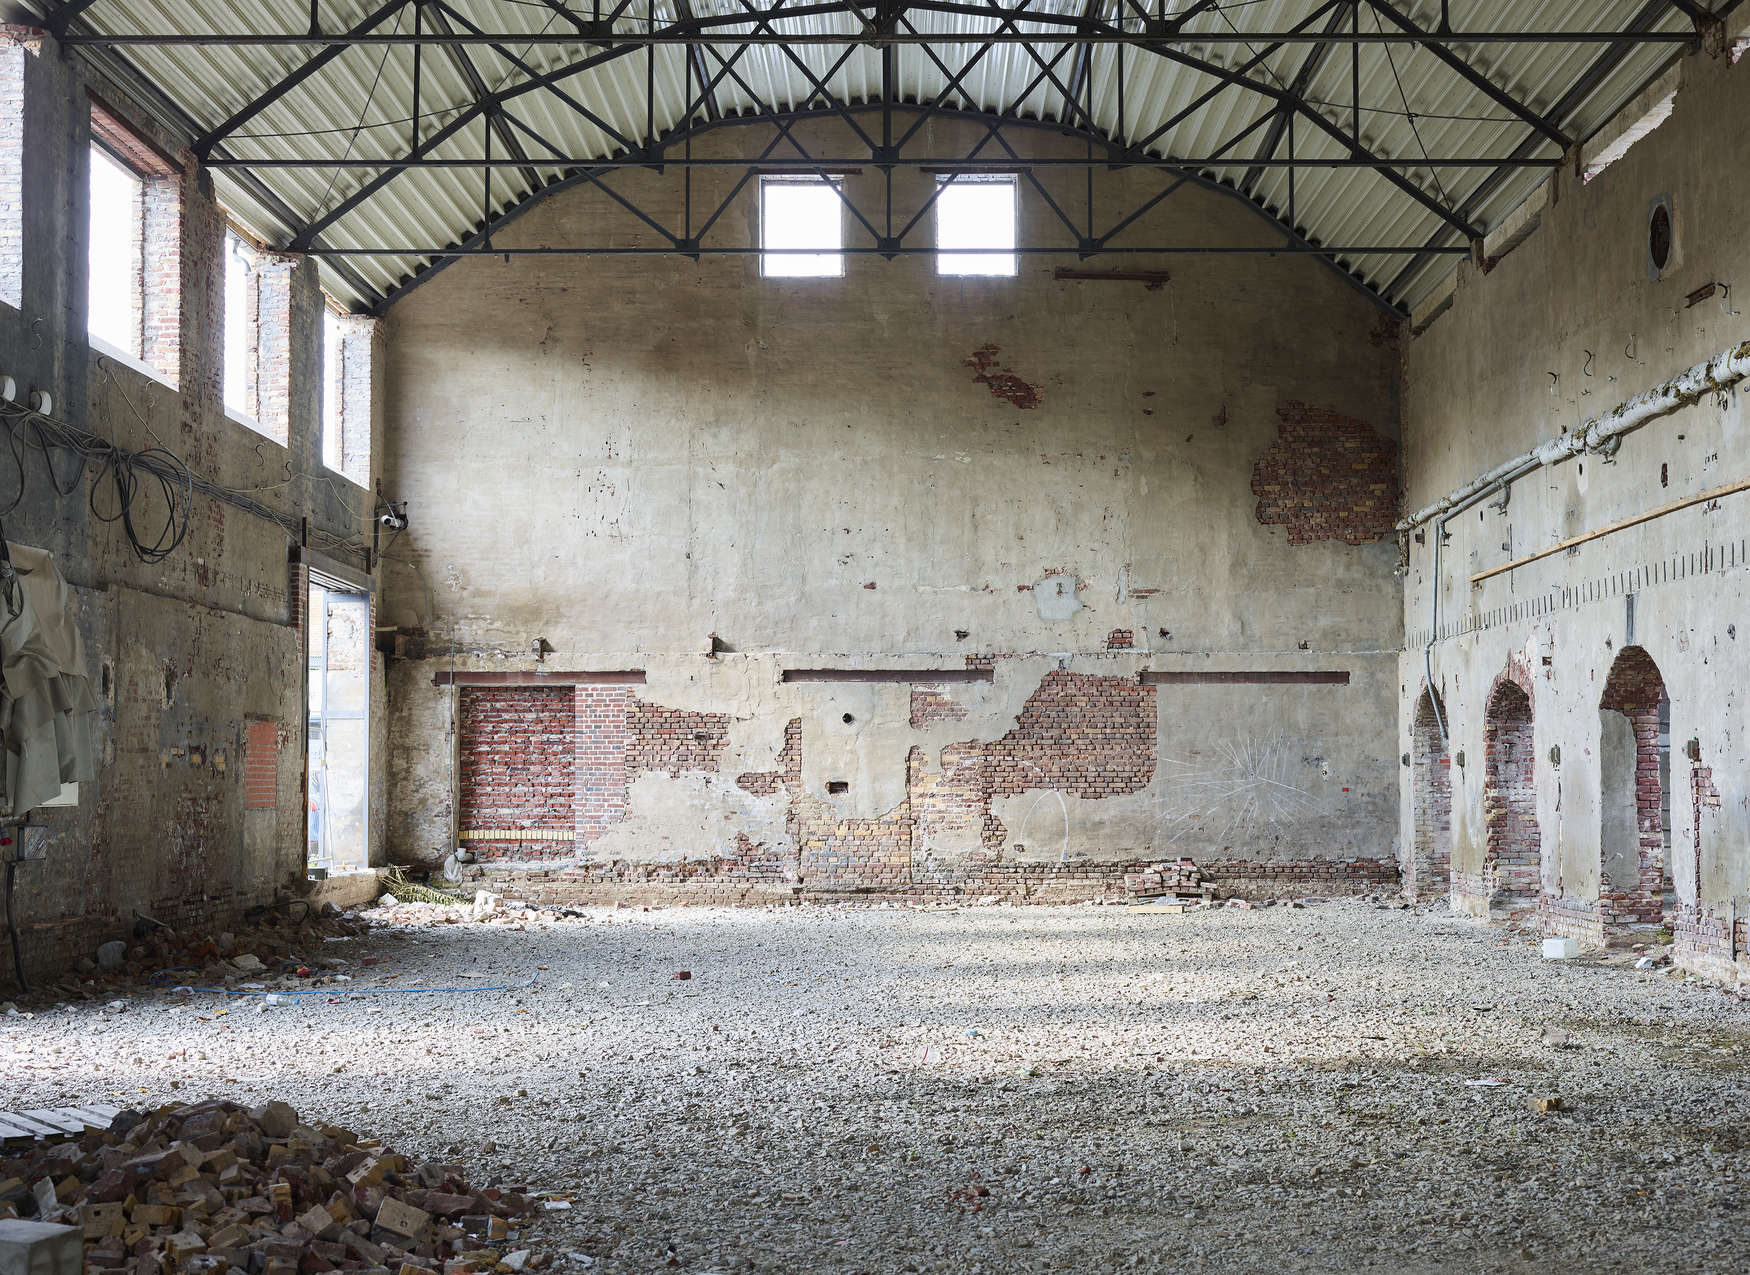             Papier peint panoramique avec hangar industriel abandonné - beige, marron
        